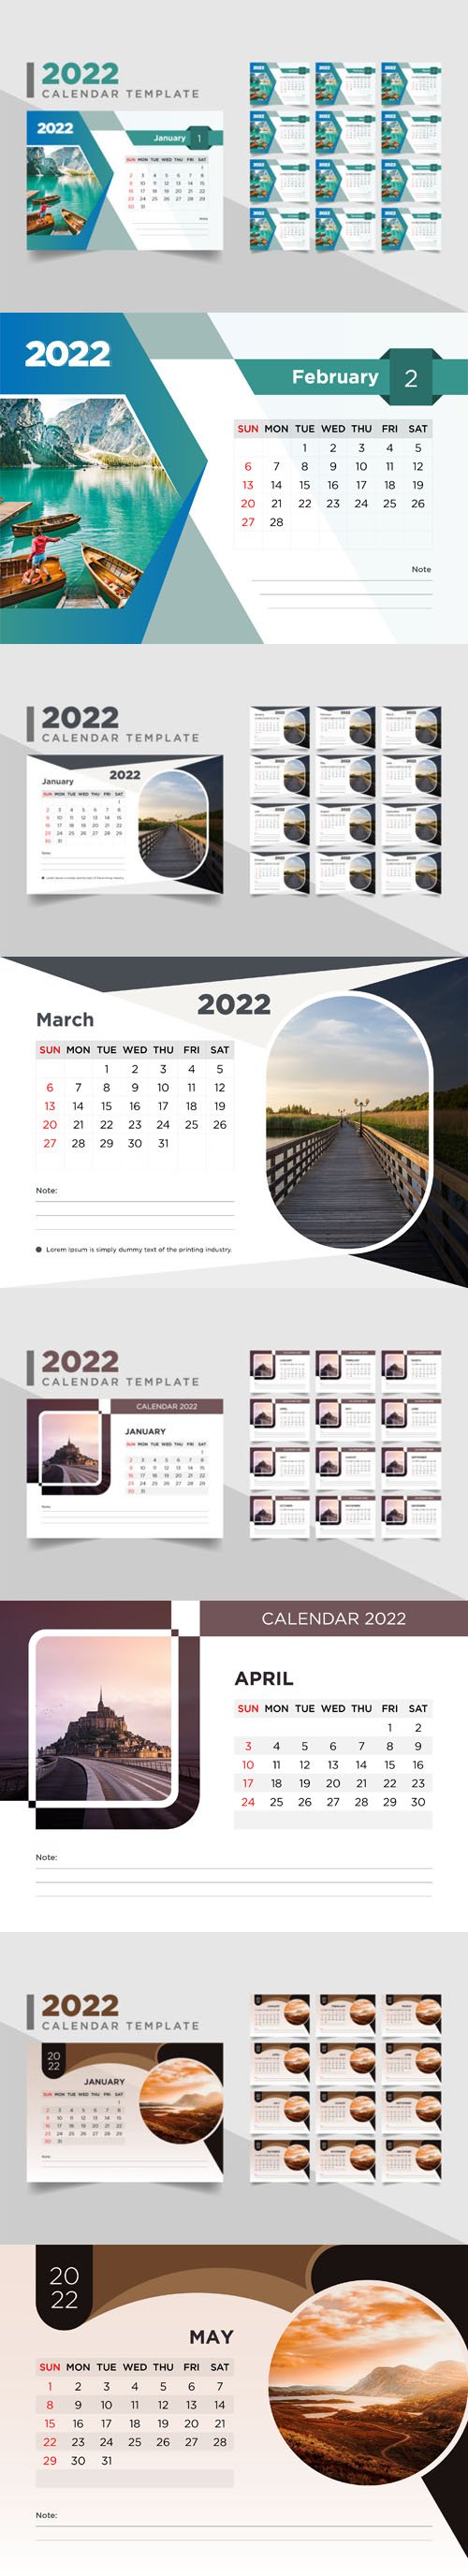 Creative 2022 Desk Calendars - 4 Vector Templates